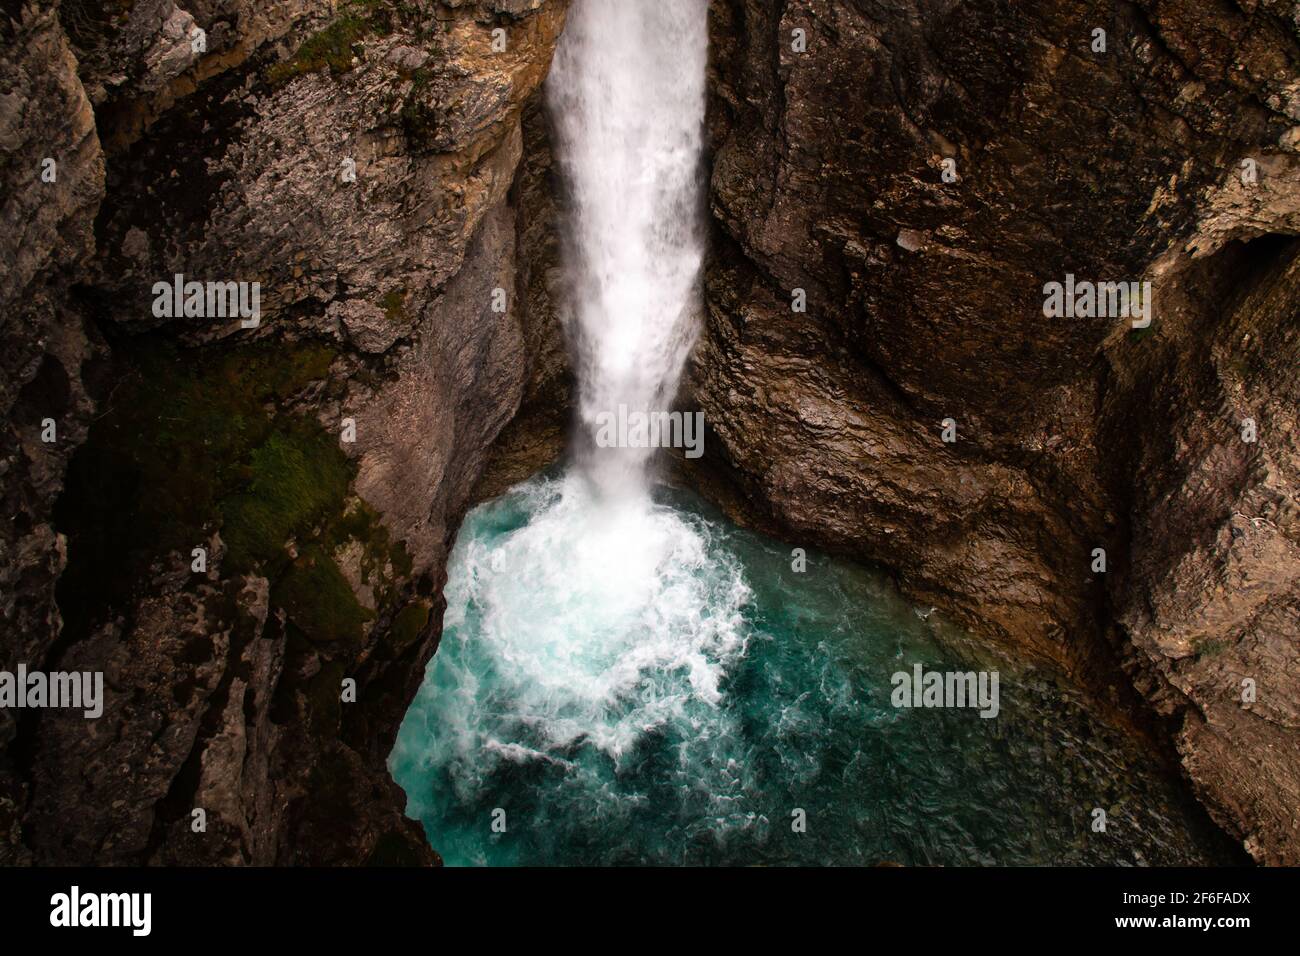 Moody immagine scattata durante un'escursione estiva alle Upper Falls del Johnston Canyon vicino a Banff, Alberta, Canada. L'acqua turchese alla base della cascata lo rende Foto Stock